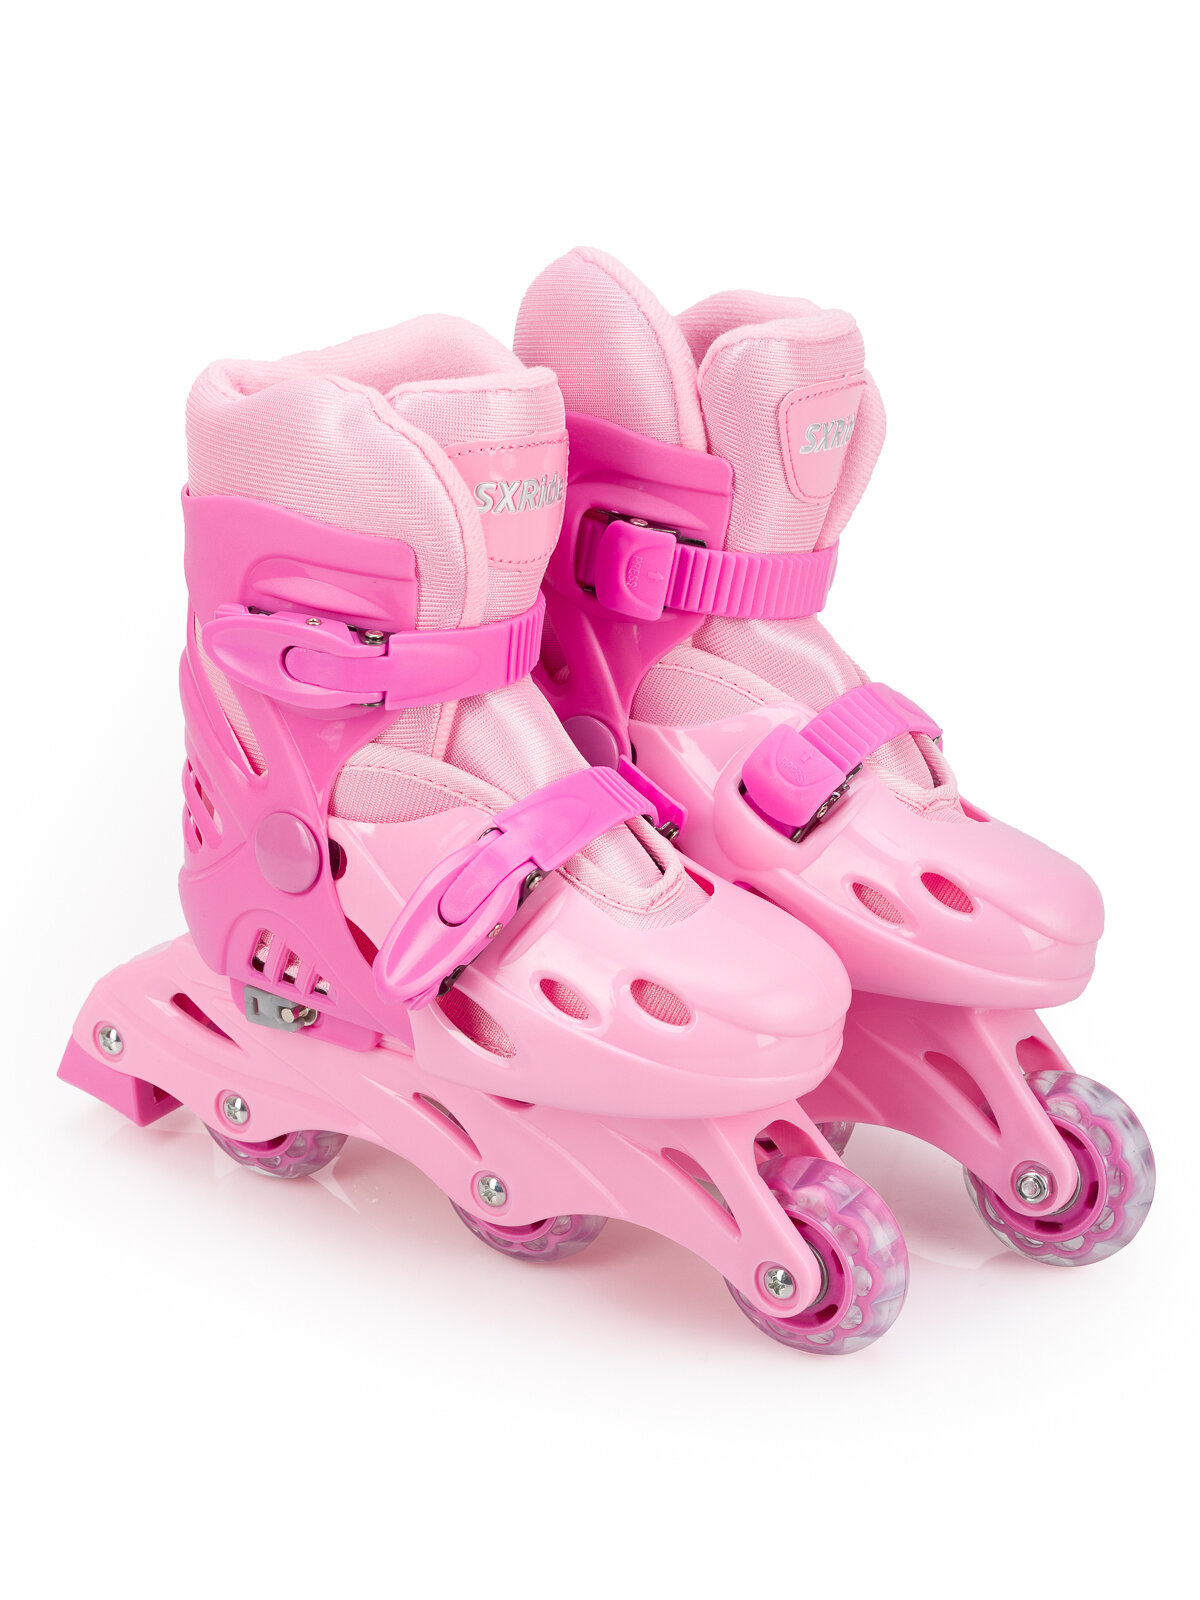 Роликовые коньки SXRIDE раздвижные YXSKT01 розовые, размер S (31-34)